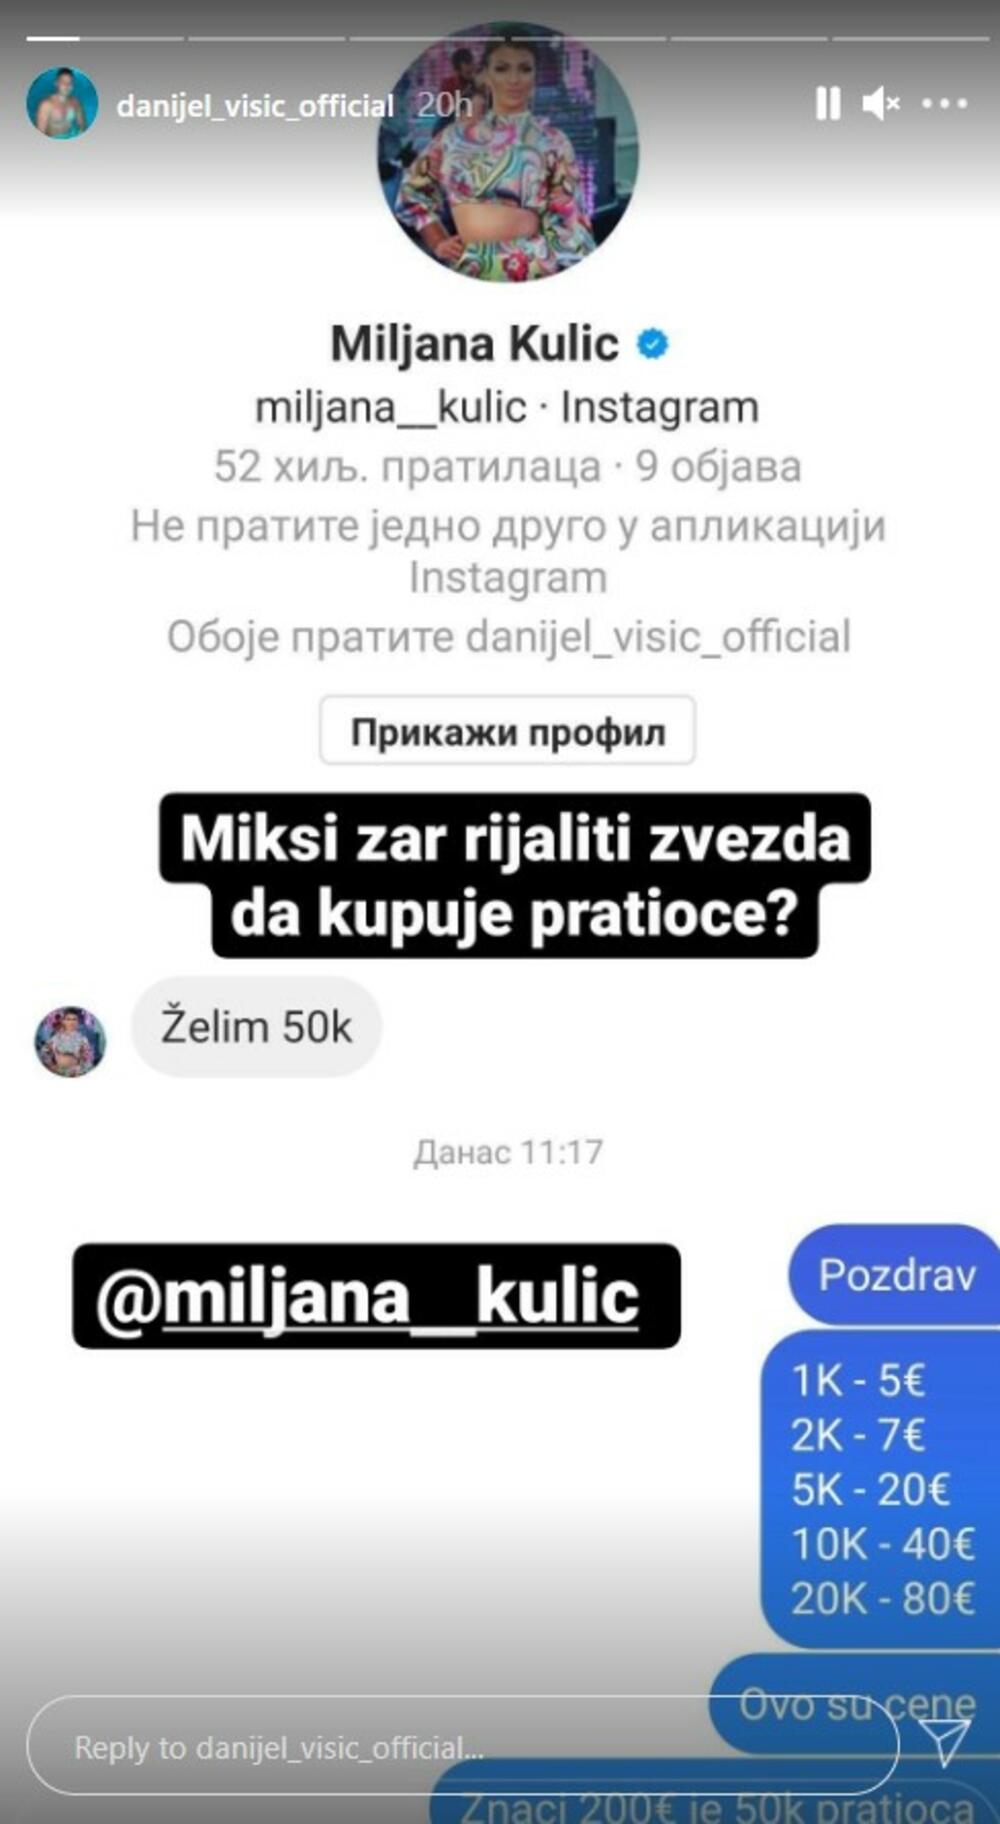 Miljana Kulić, Danijel Višić